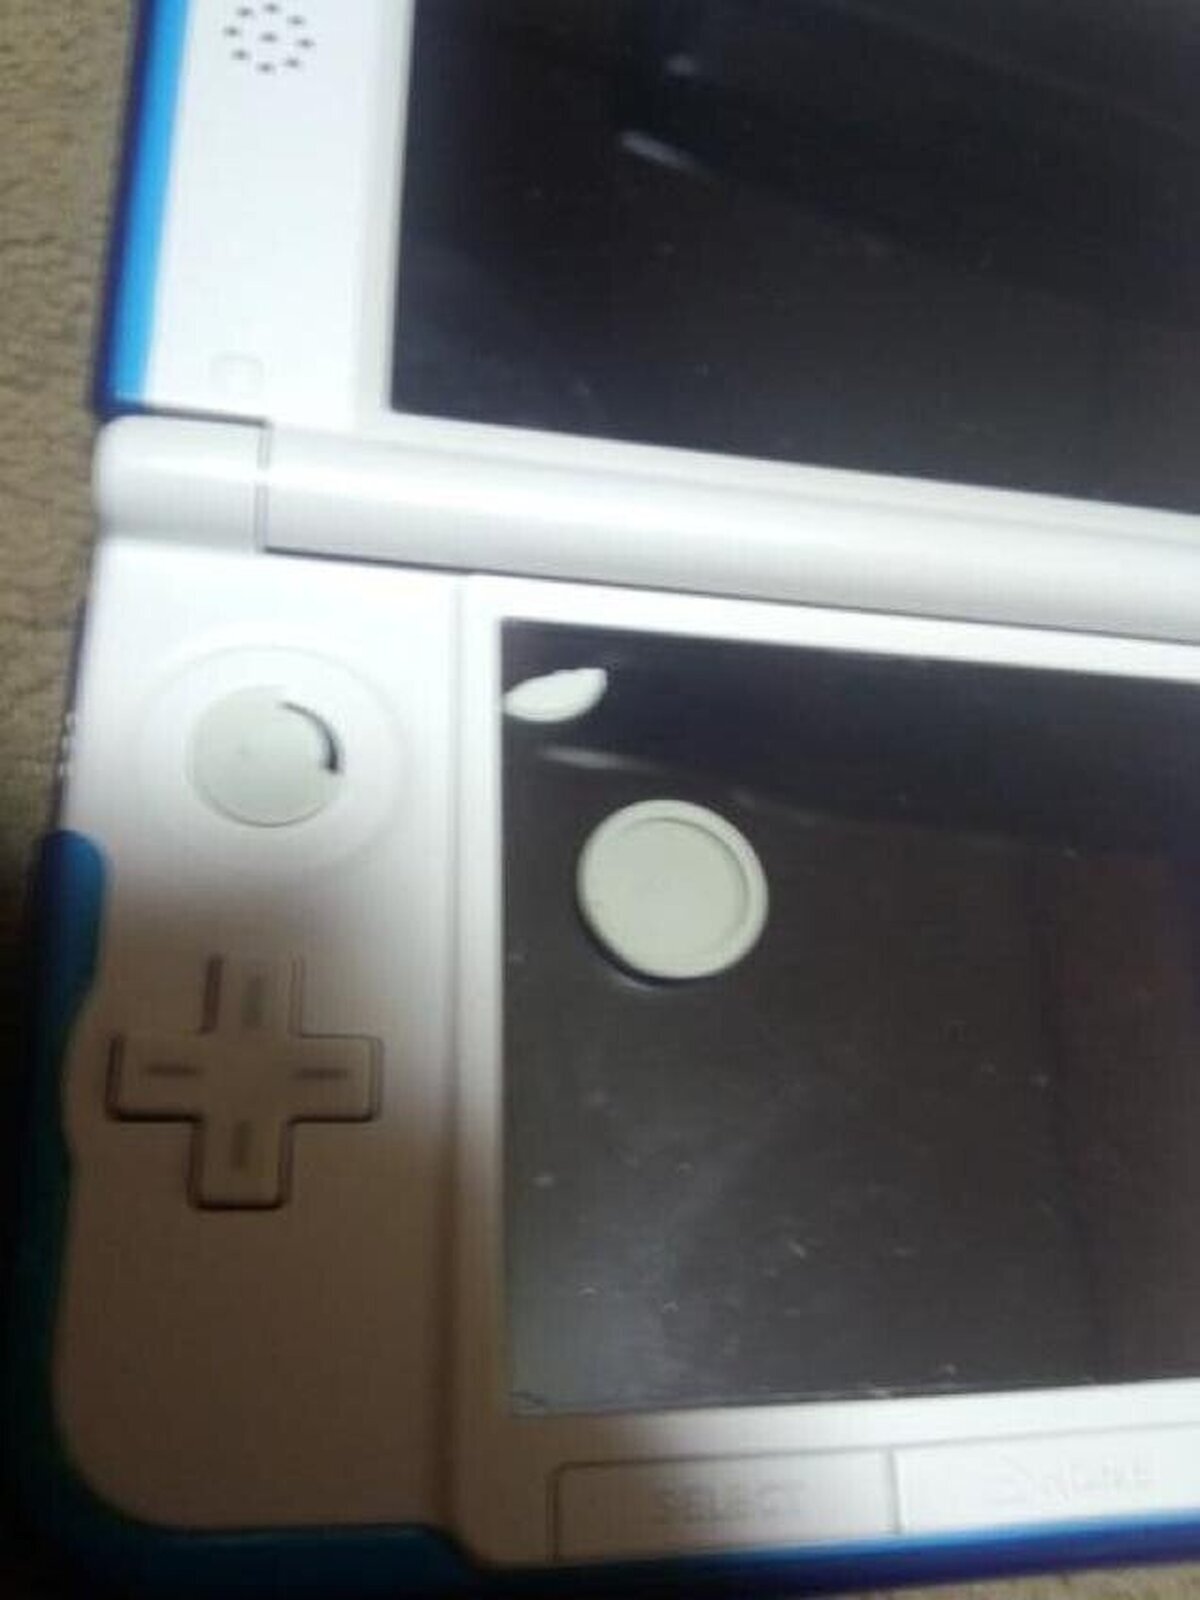 Mucho cuidado con Super Smash Bros y los sticks de Nintendo 3DS